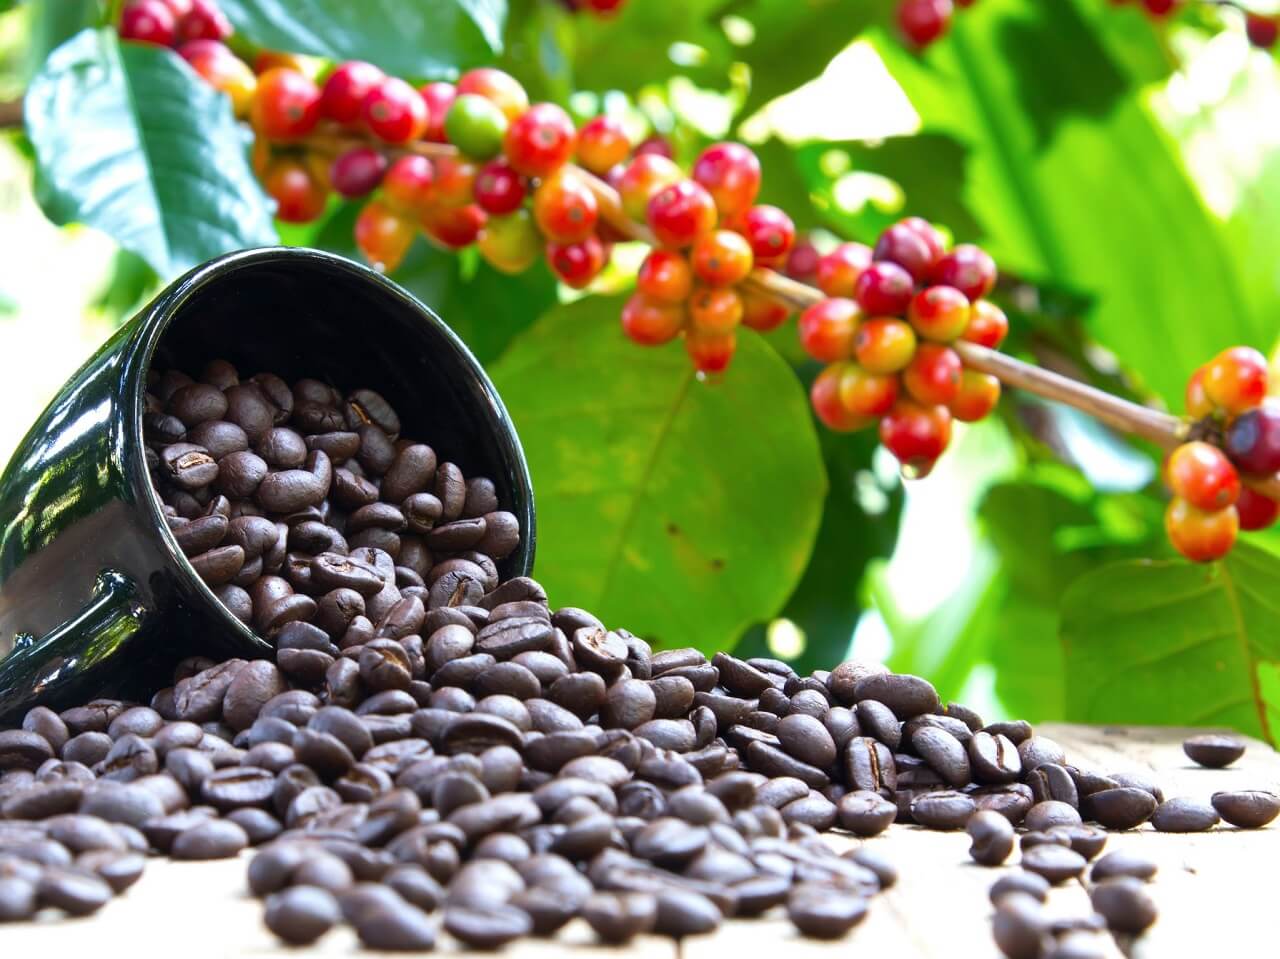 ხელახლა აღმოაჩინეს ყავის ველური, იშვიათი სახეობა, რომელმაც შეიძლება, ყავა გადაშენებისგან გადაარჩინოს — #1tvმეცნიერება